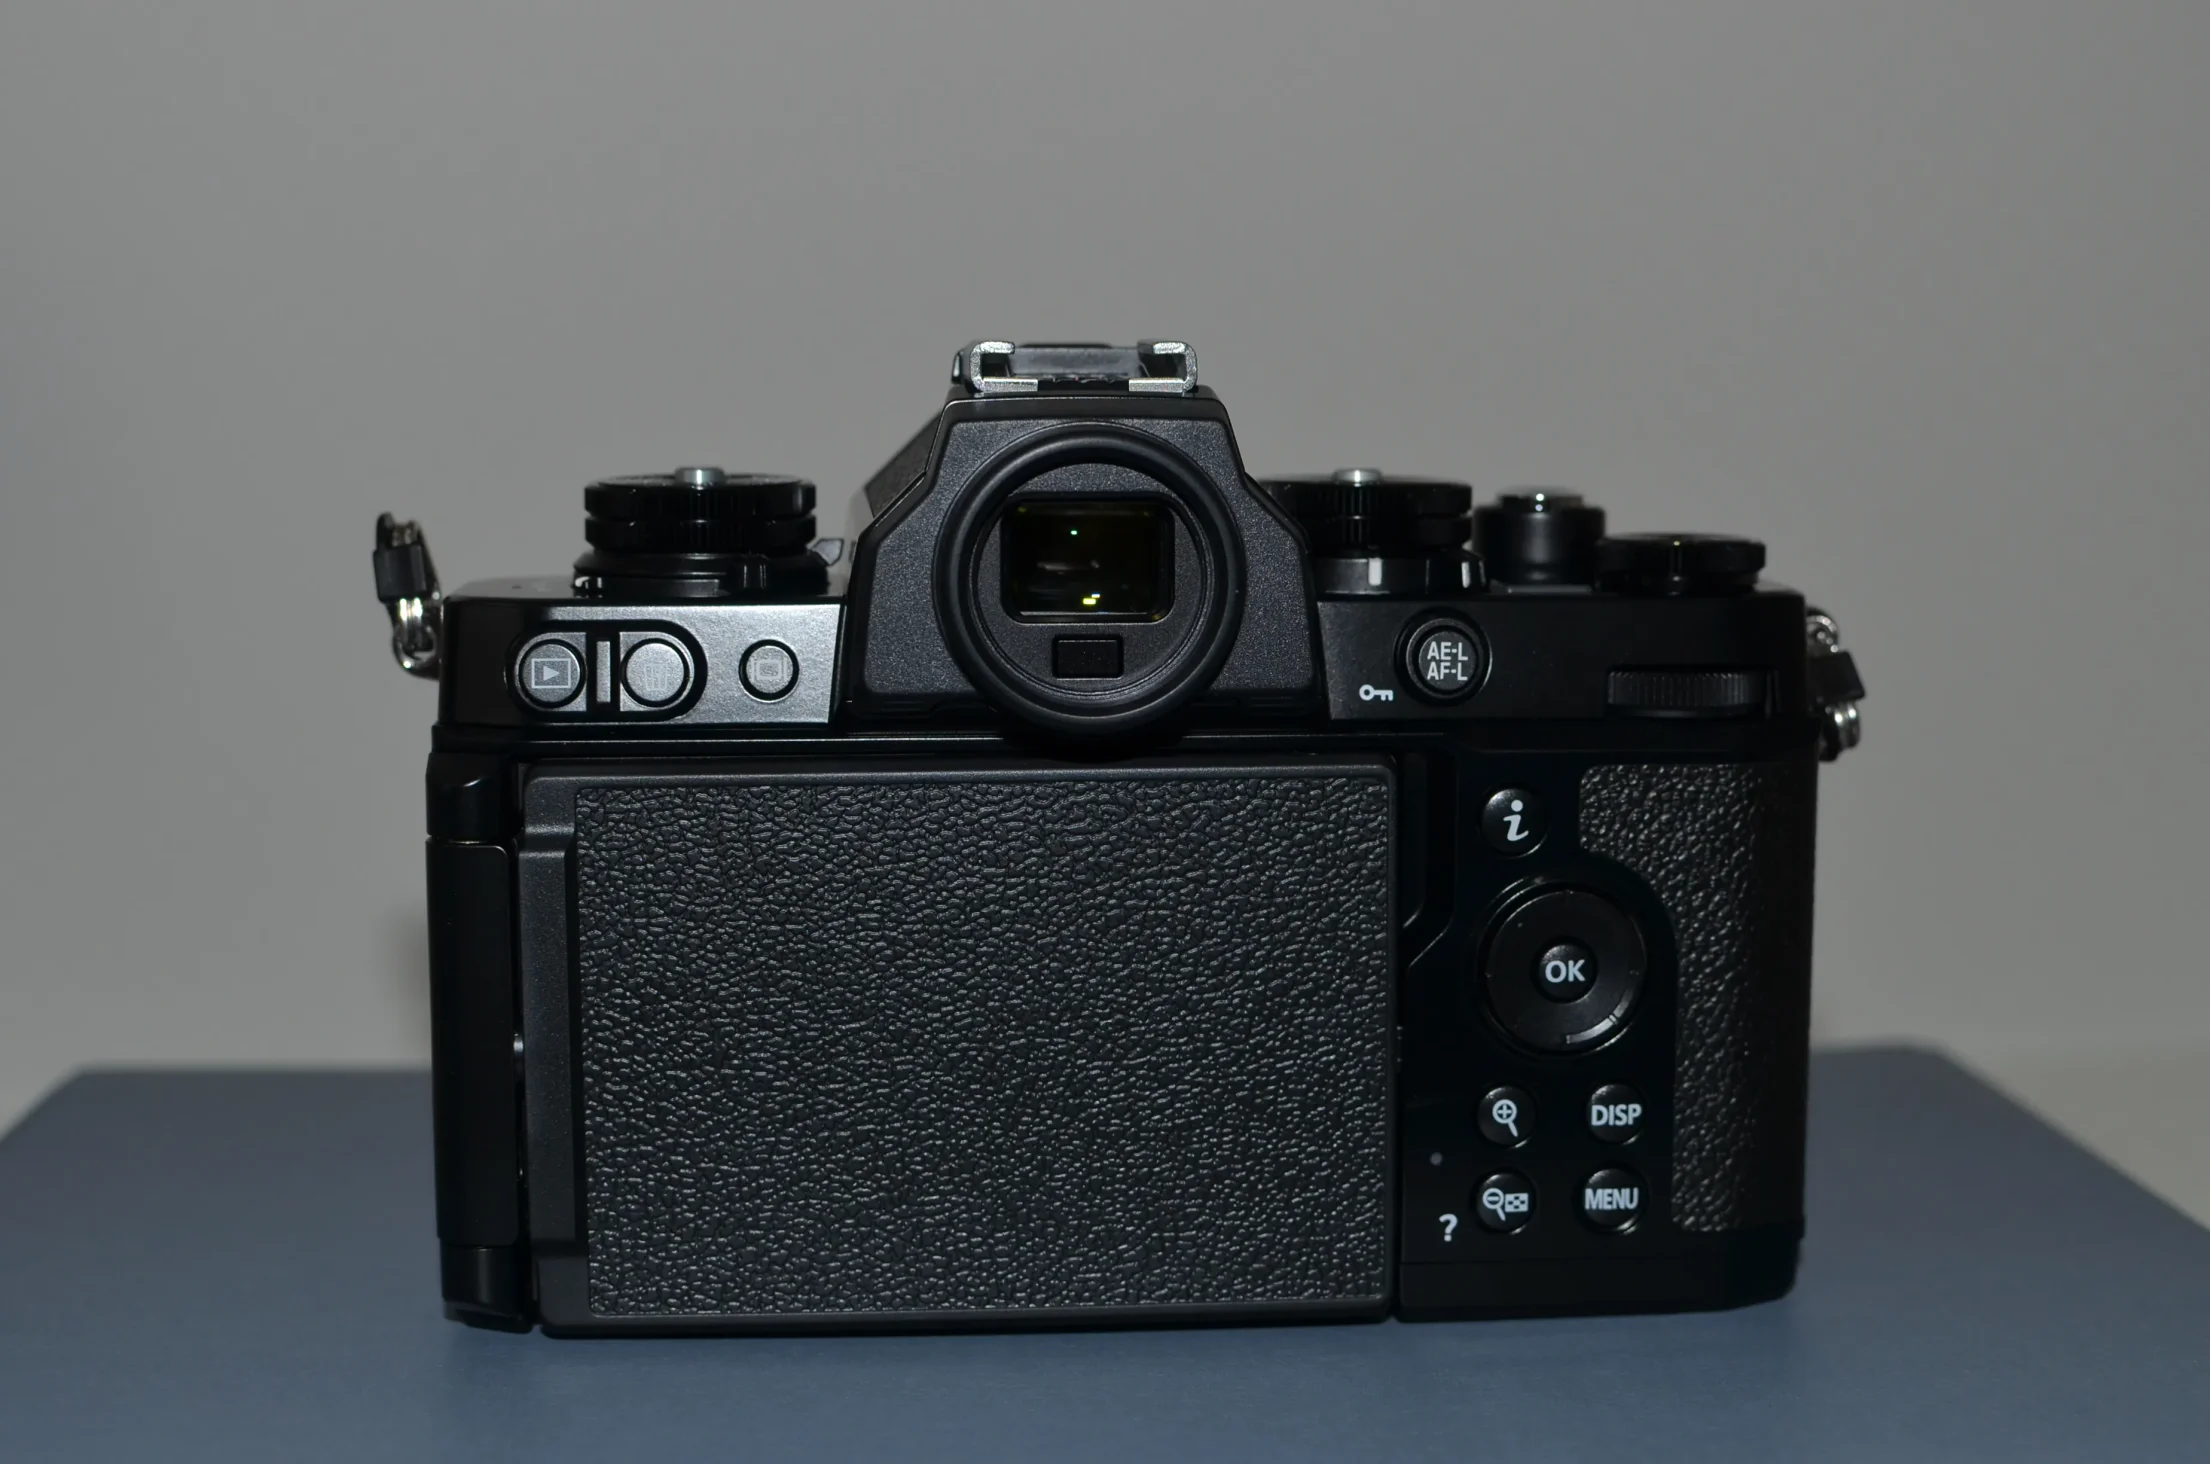 Nikon Z fcの液晶はバリアングル。
閉じると昔のカメラみたいでオシャレ